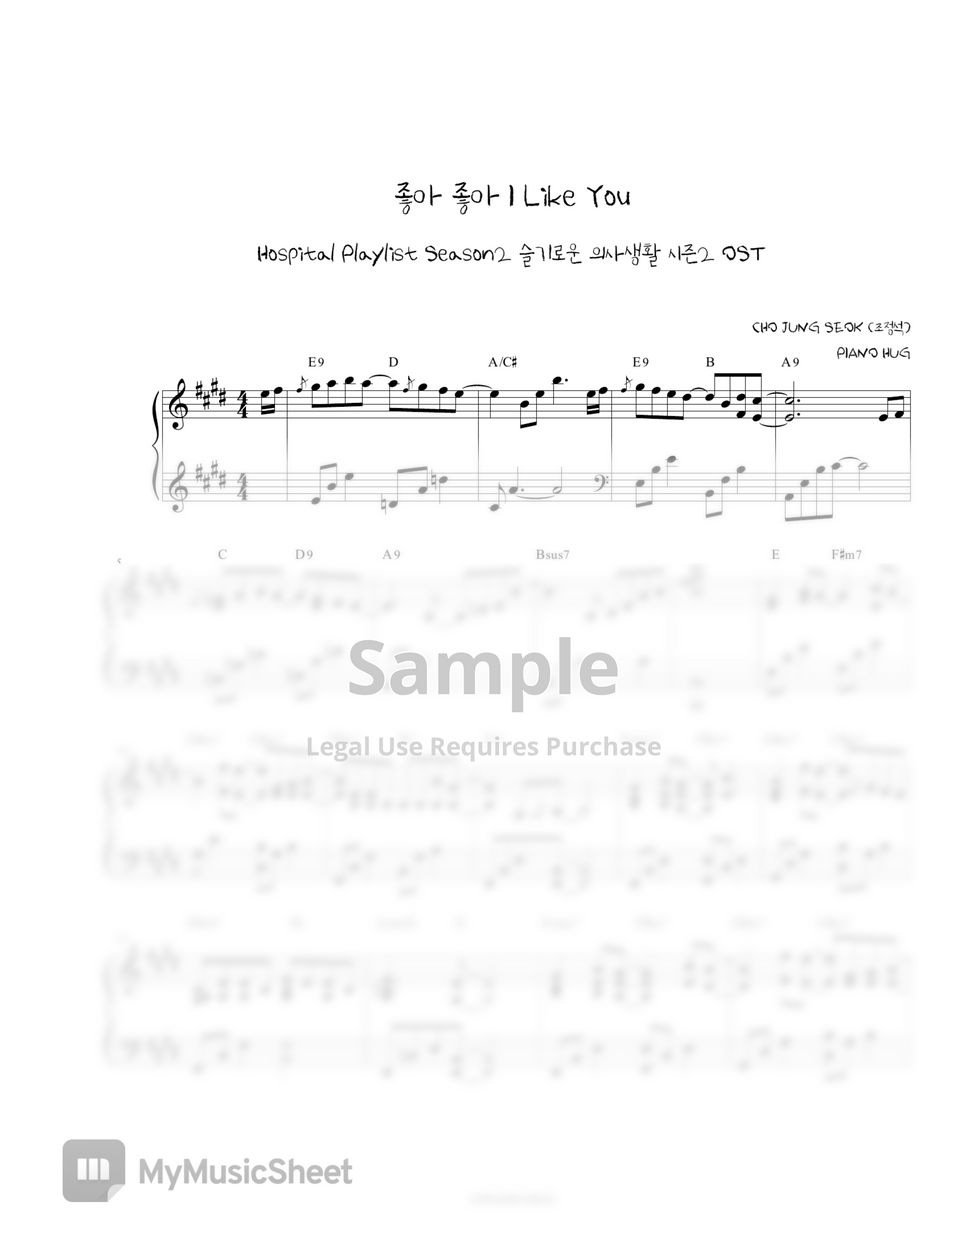 CHO JUNG SEOK - I Like You (Hospital Playlist Season2 OST) by Piano Hug